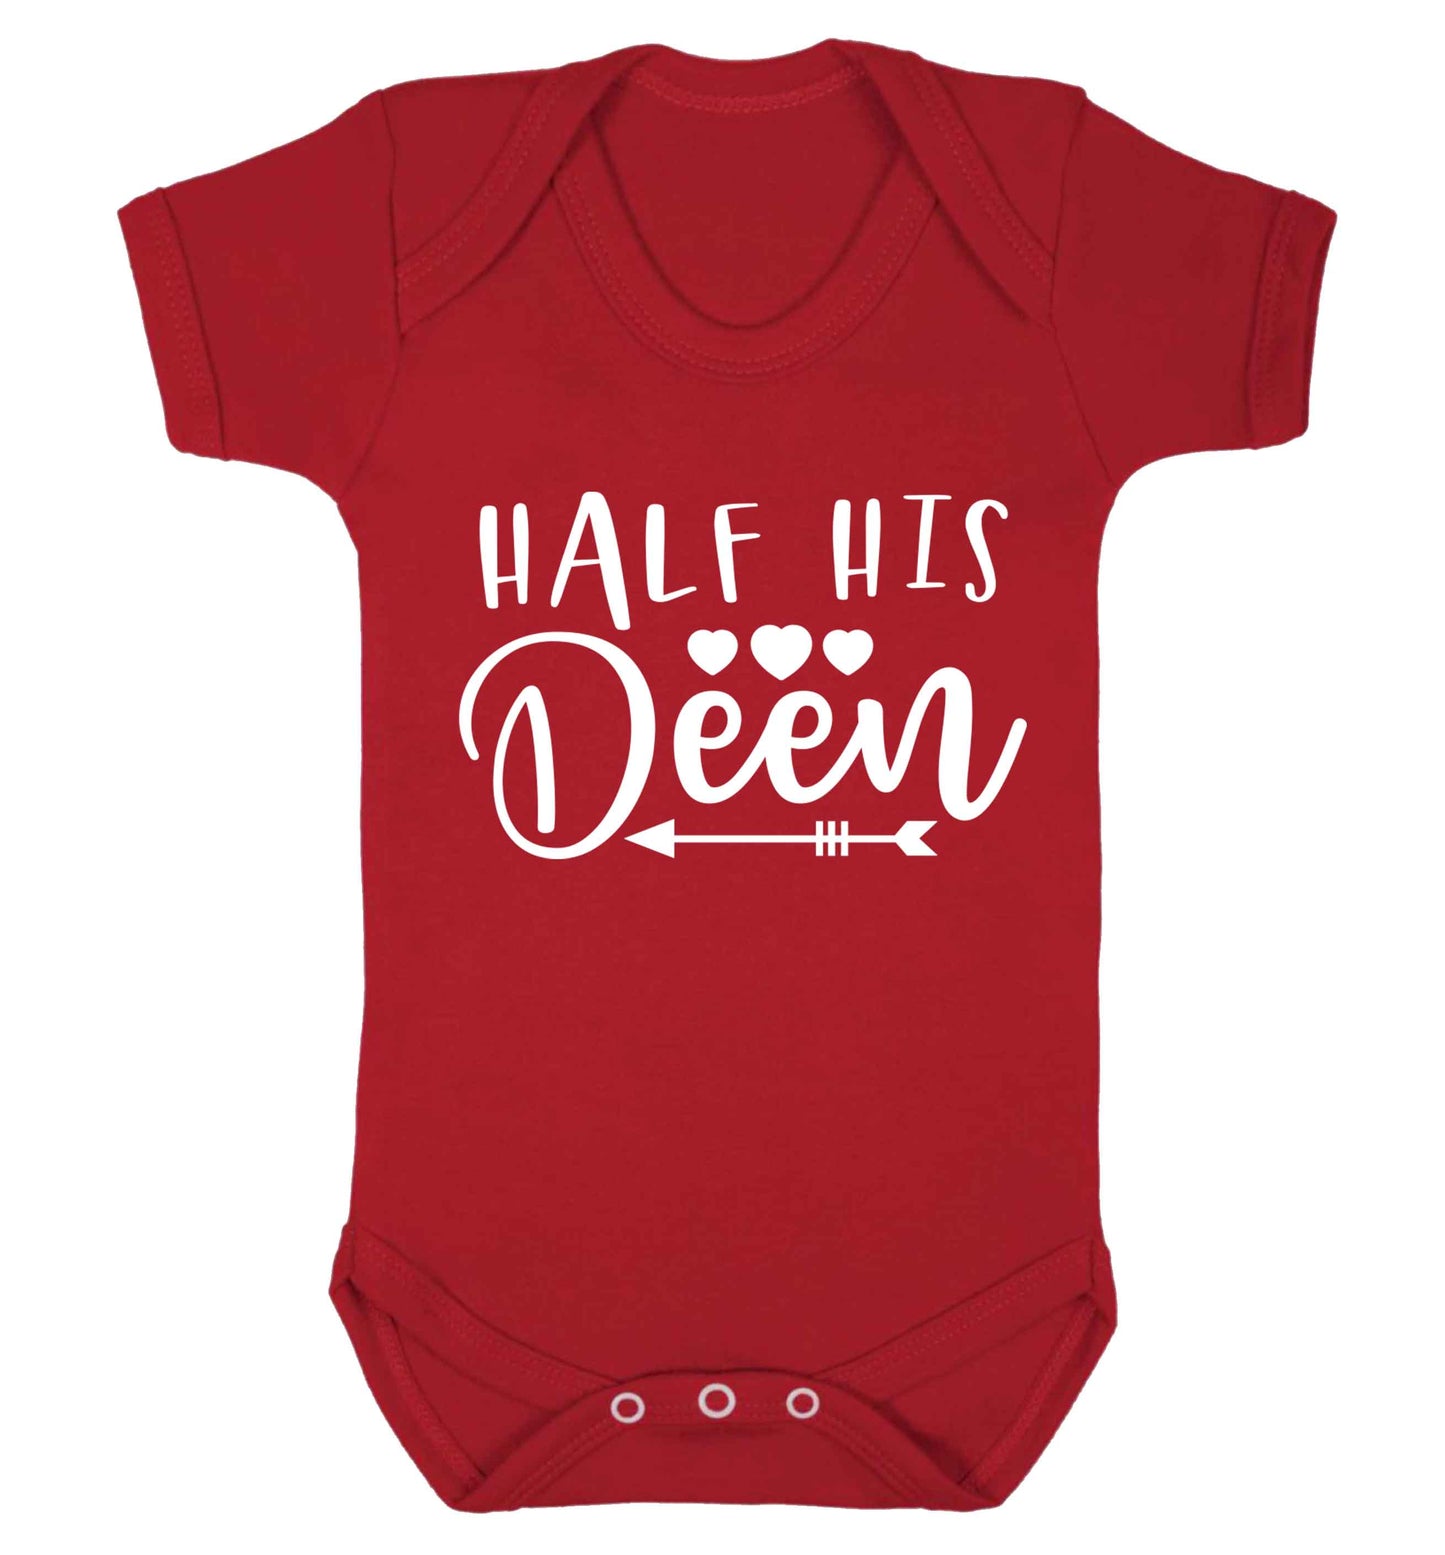 Half his deen Baby Vest red 18-24 months